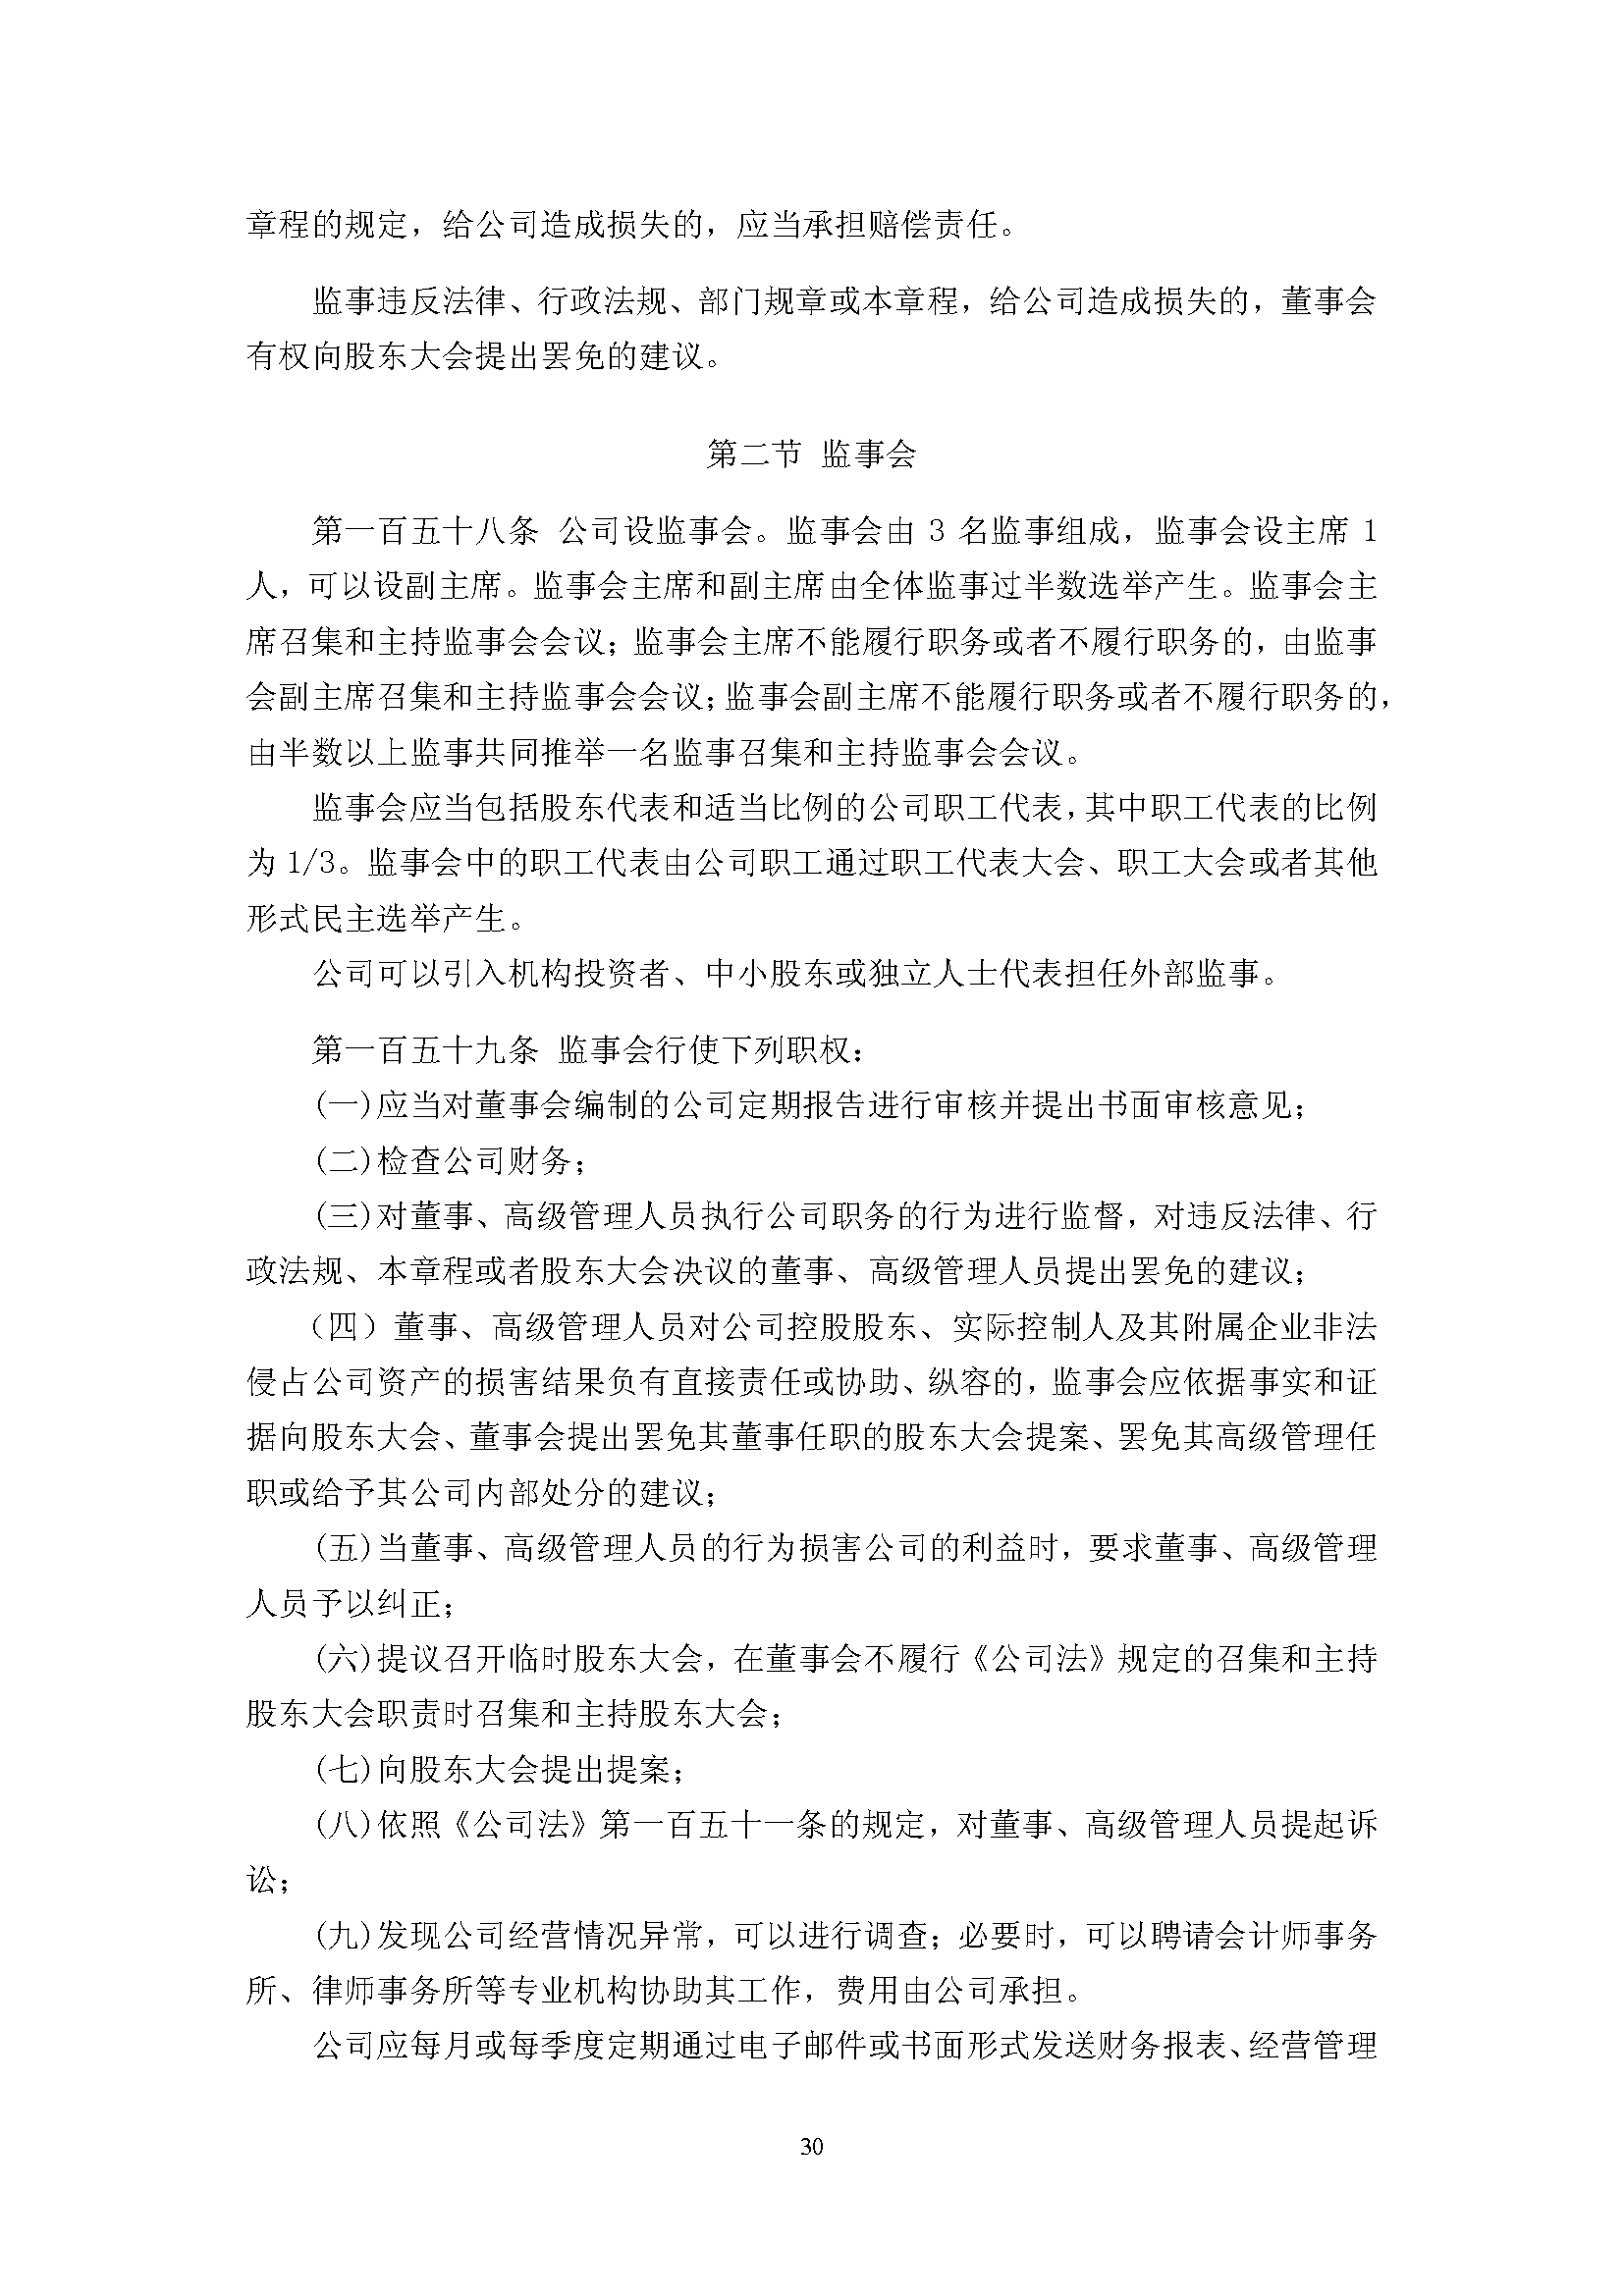 宜华生活公司章程(2019-5-31)_页面_30.png